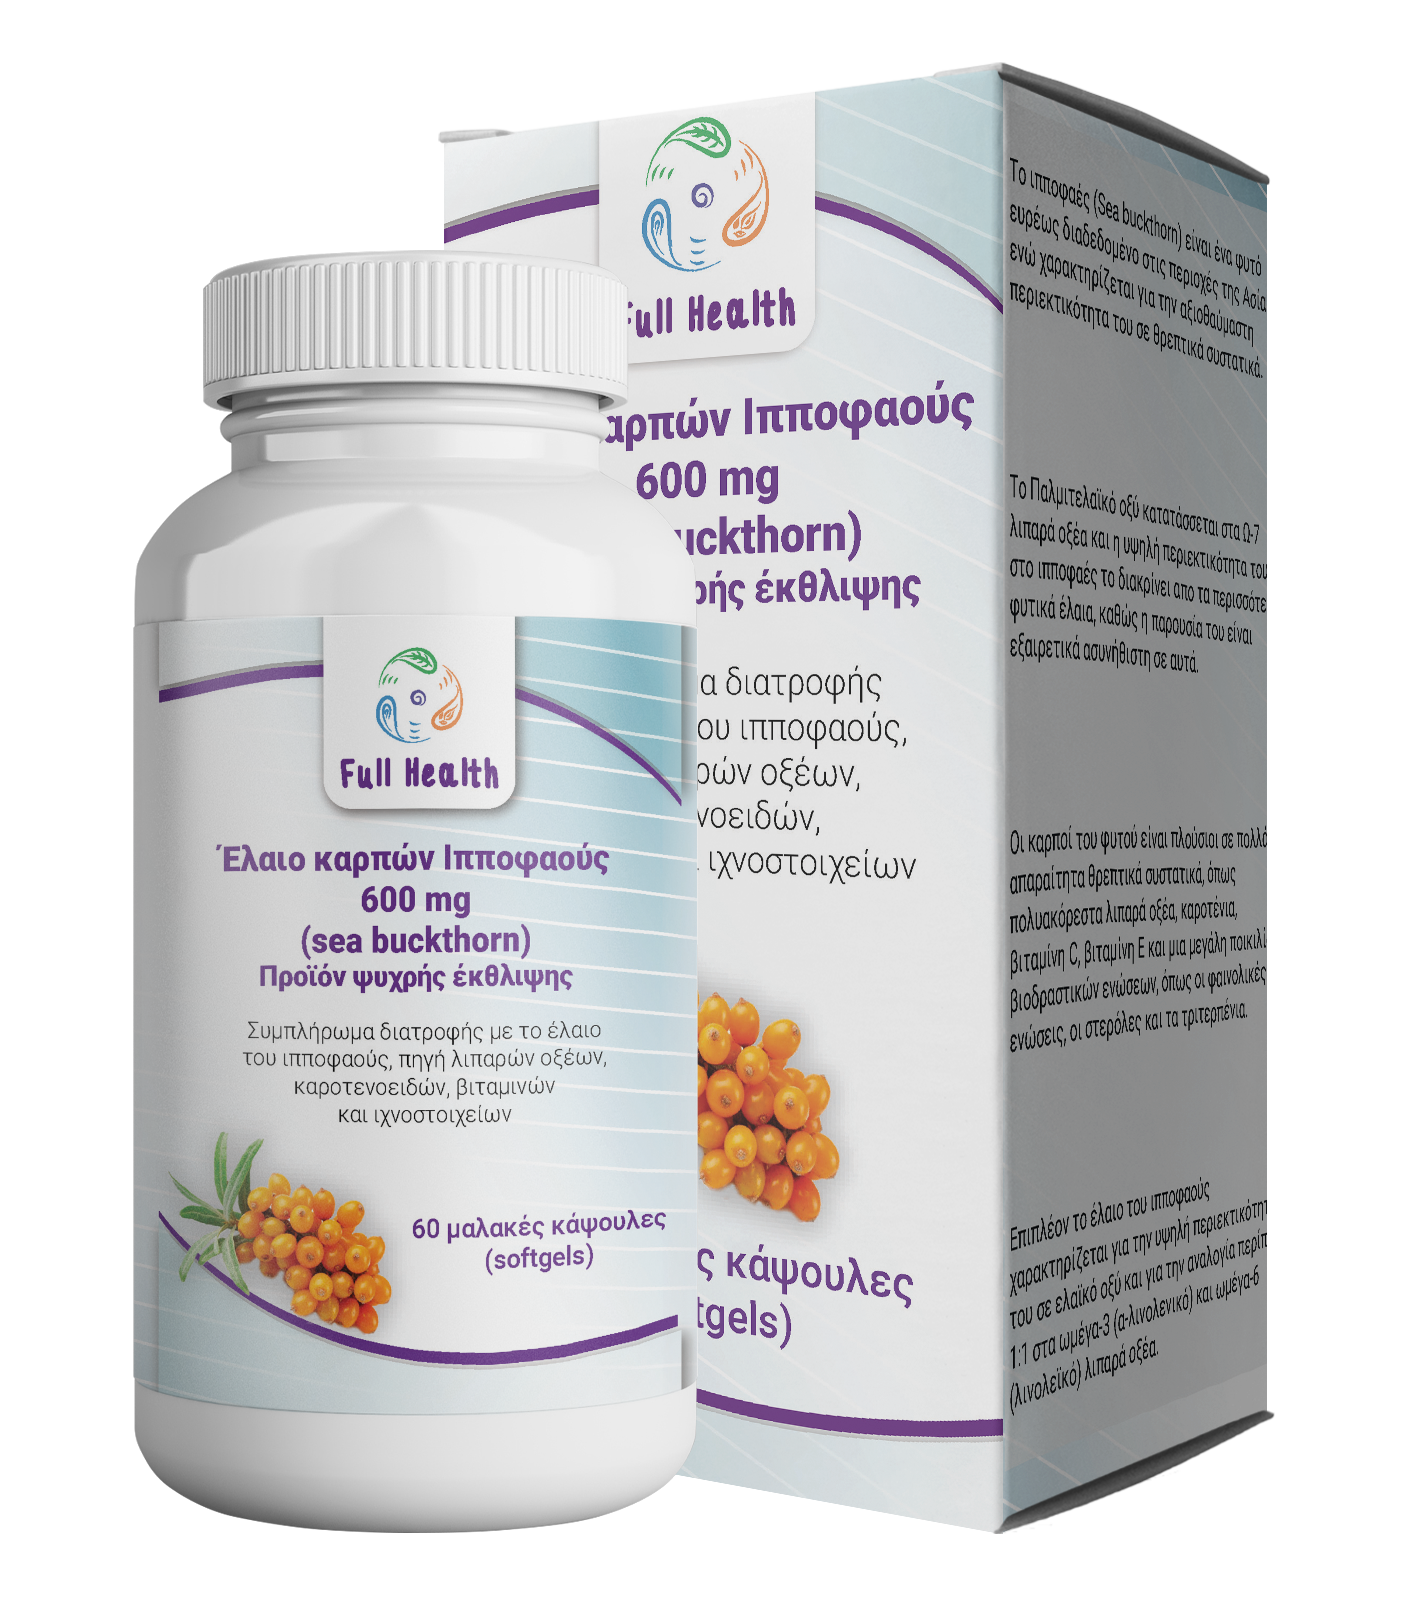 Έλαιο καρπών ιπποφαούς 600 mg 60 Caps (Συμπλήρωμα διατροφής με ιπποφαές, πηγή λιπαρών οξέων, καροτενοειδών, βιταμινών και ιχνοστοιχείων)